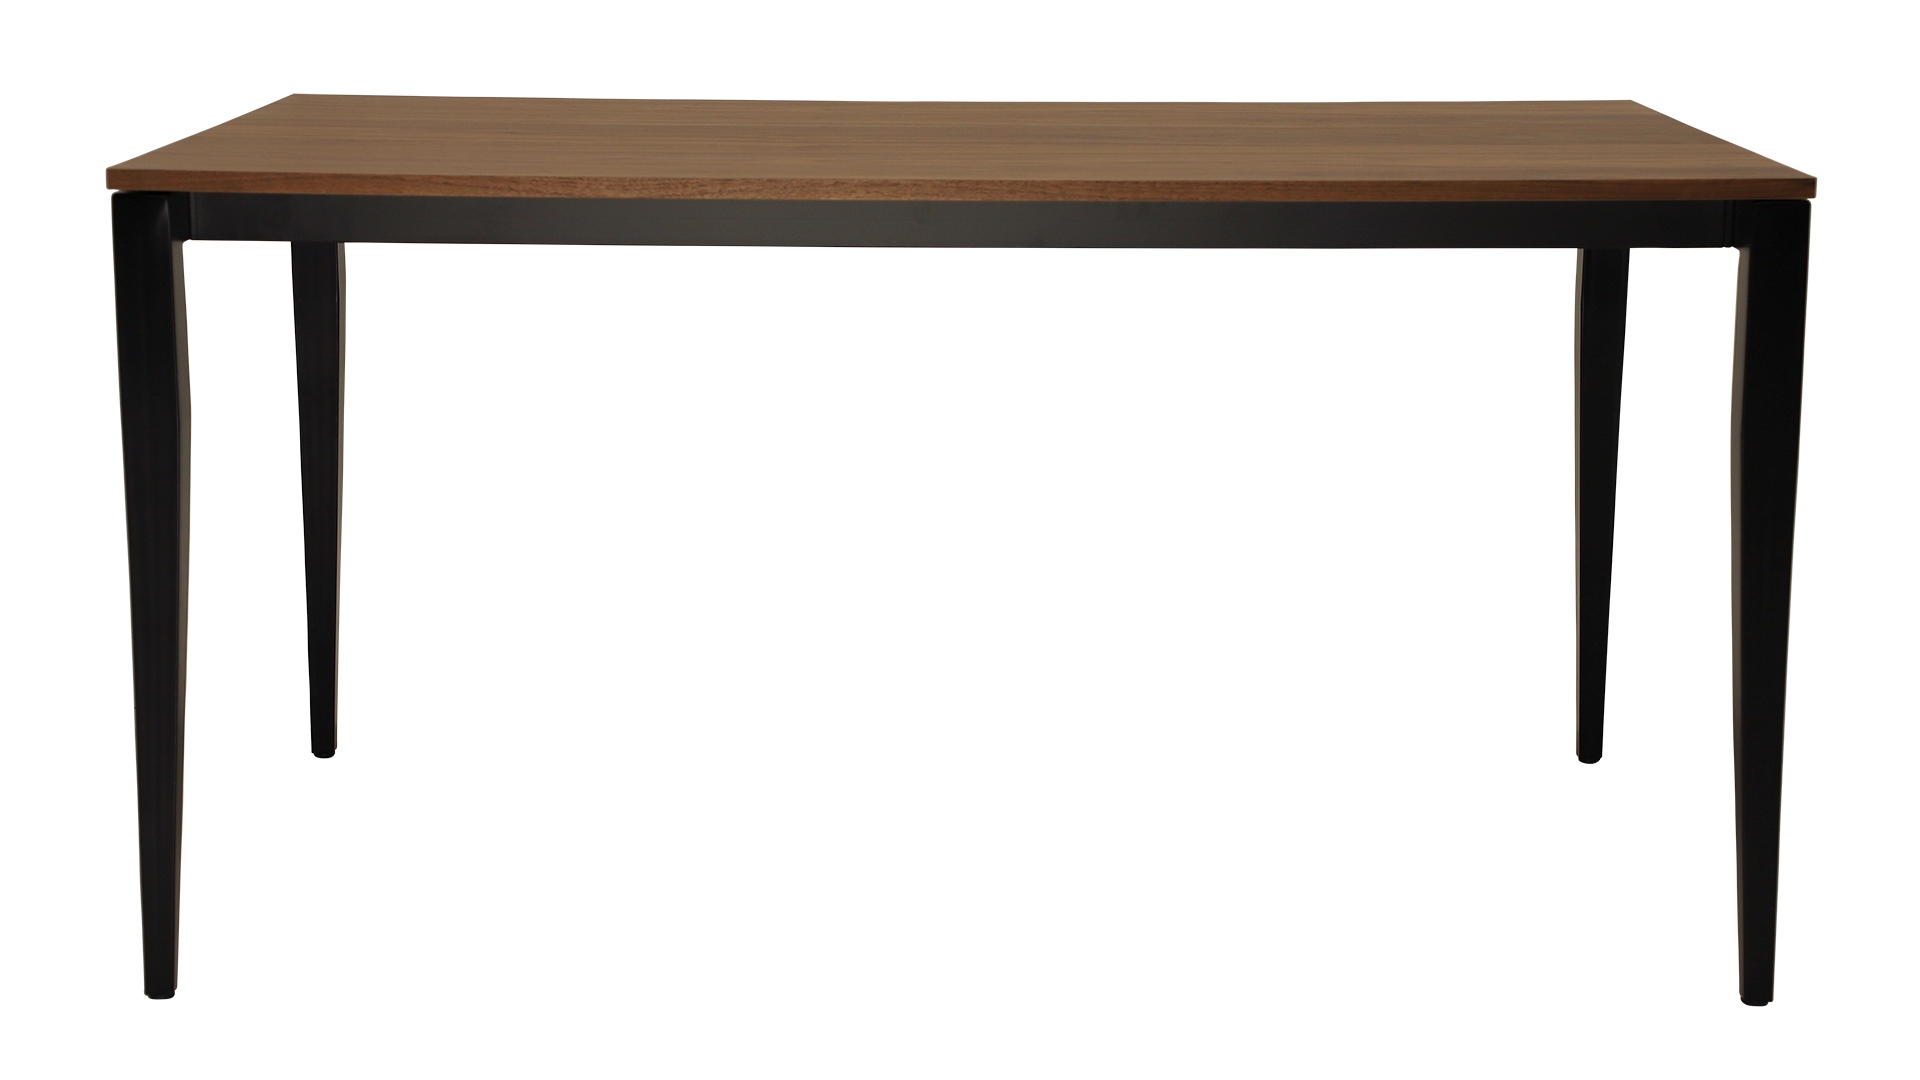 Der schoene Esstisch Jupiter von der Marke Jan Kurtz ist ausziehbar. Der Tisch besitzt ein schwarzes Metall Gestell mit einer Tischplatte in Nussbaum Optik.